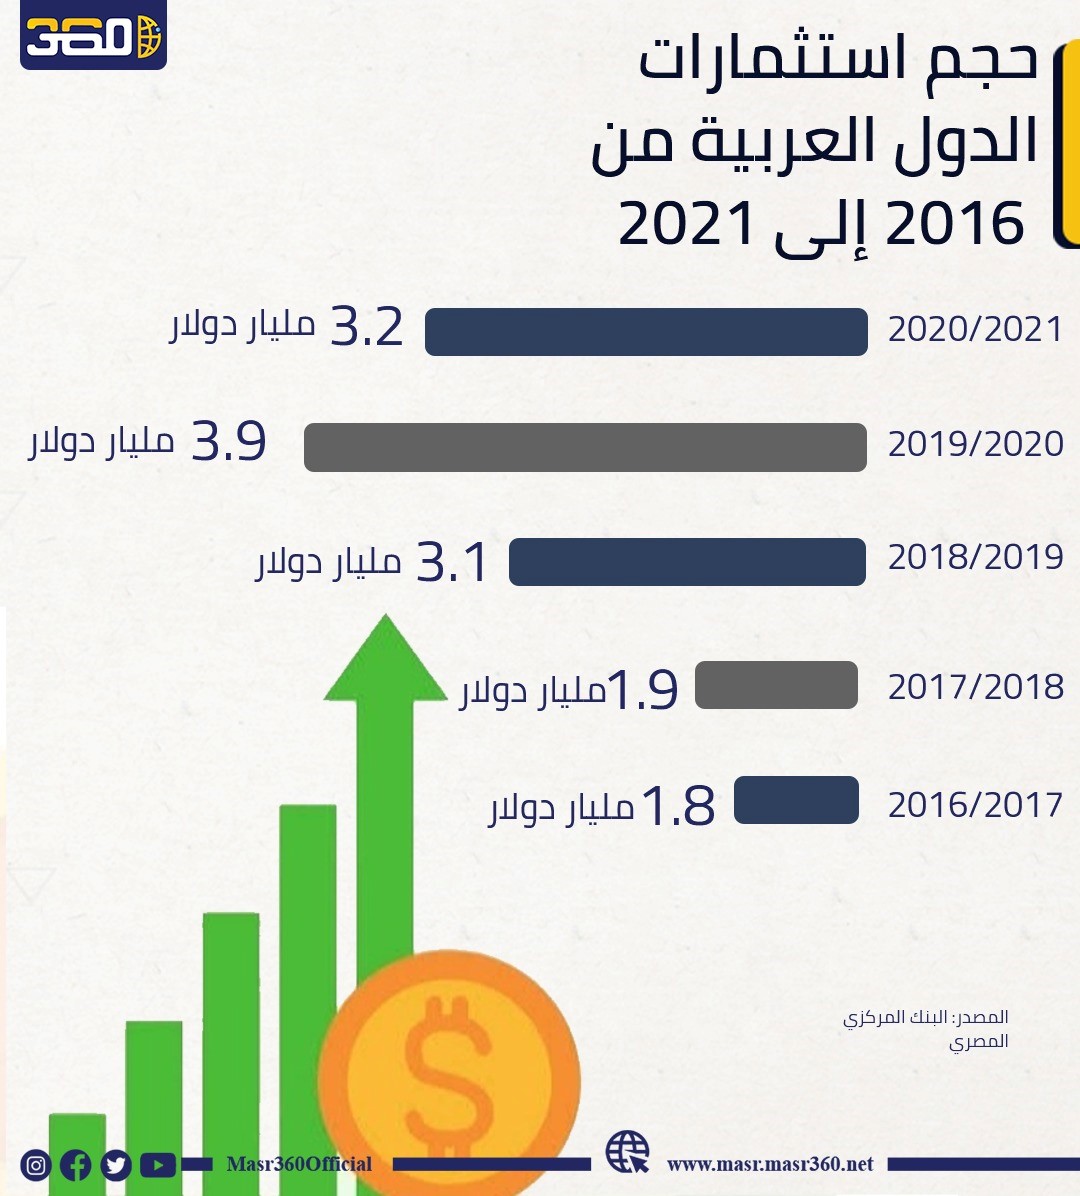 حجم استثمارات الدول العربية من 2016 إلى 2021